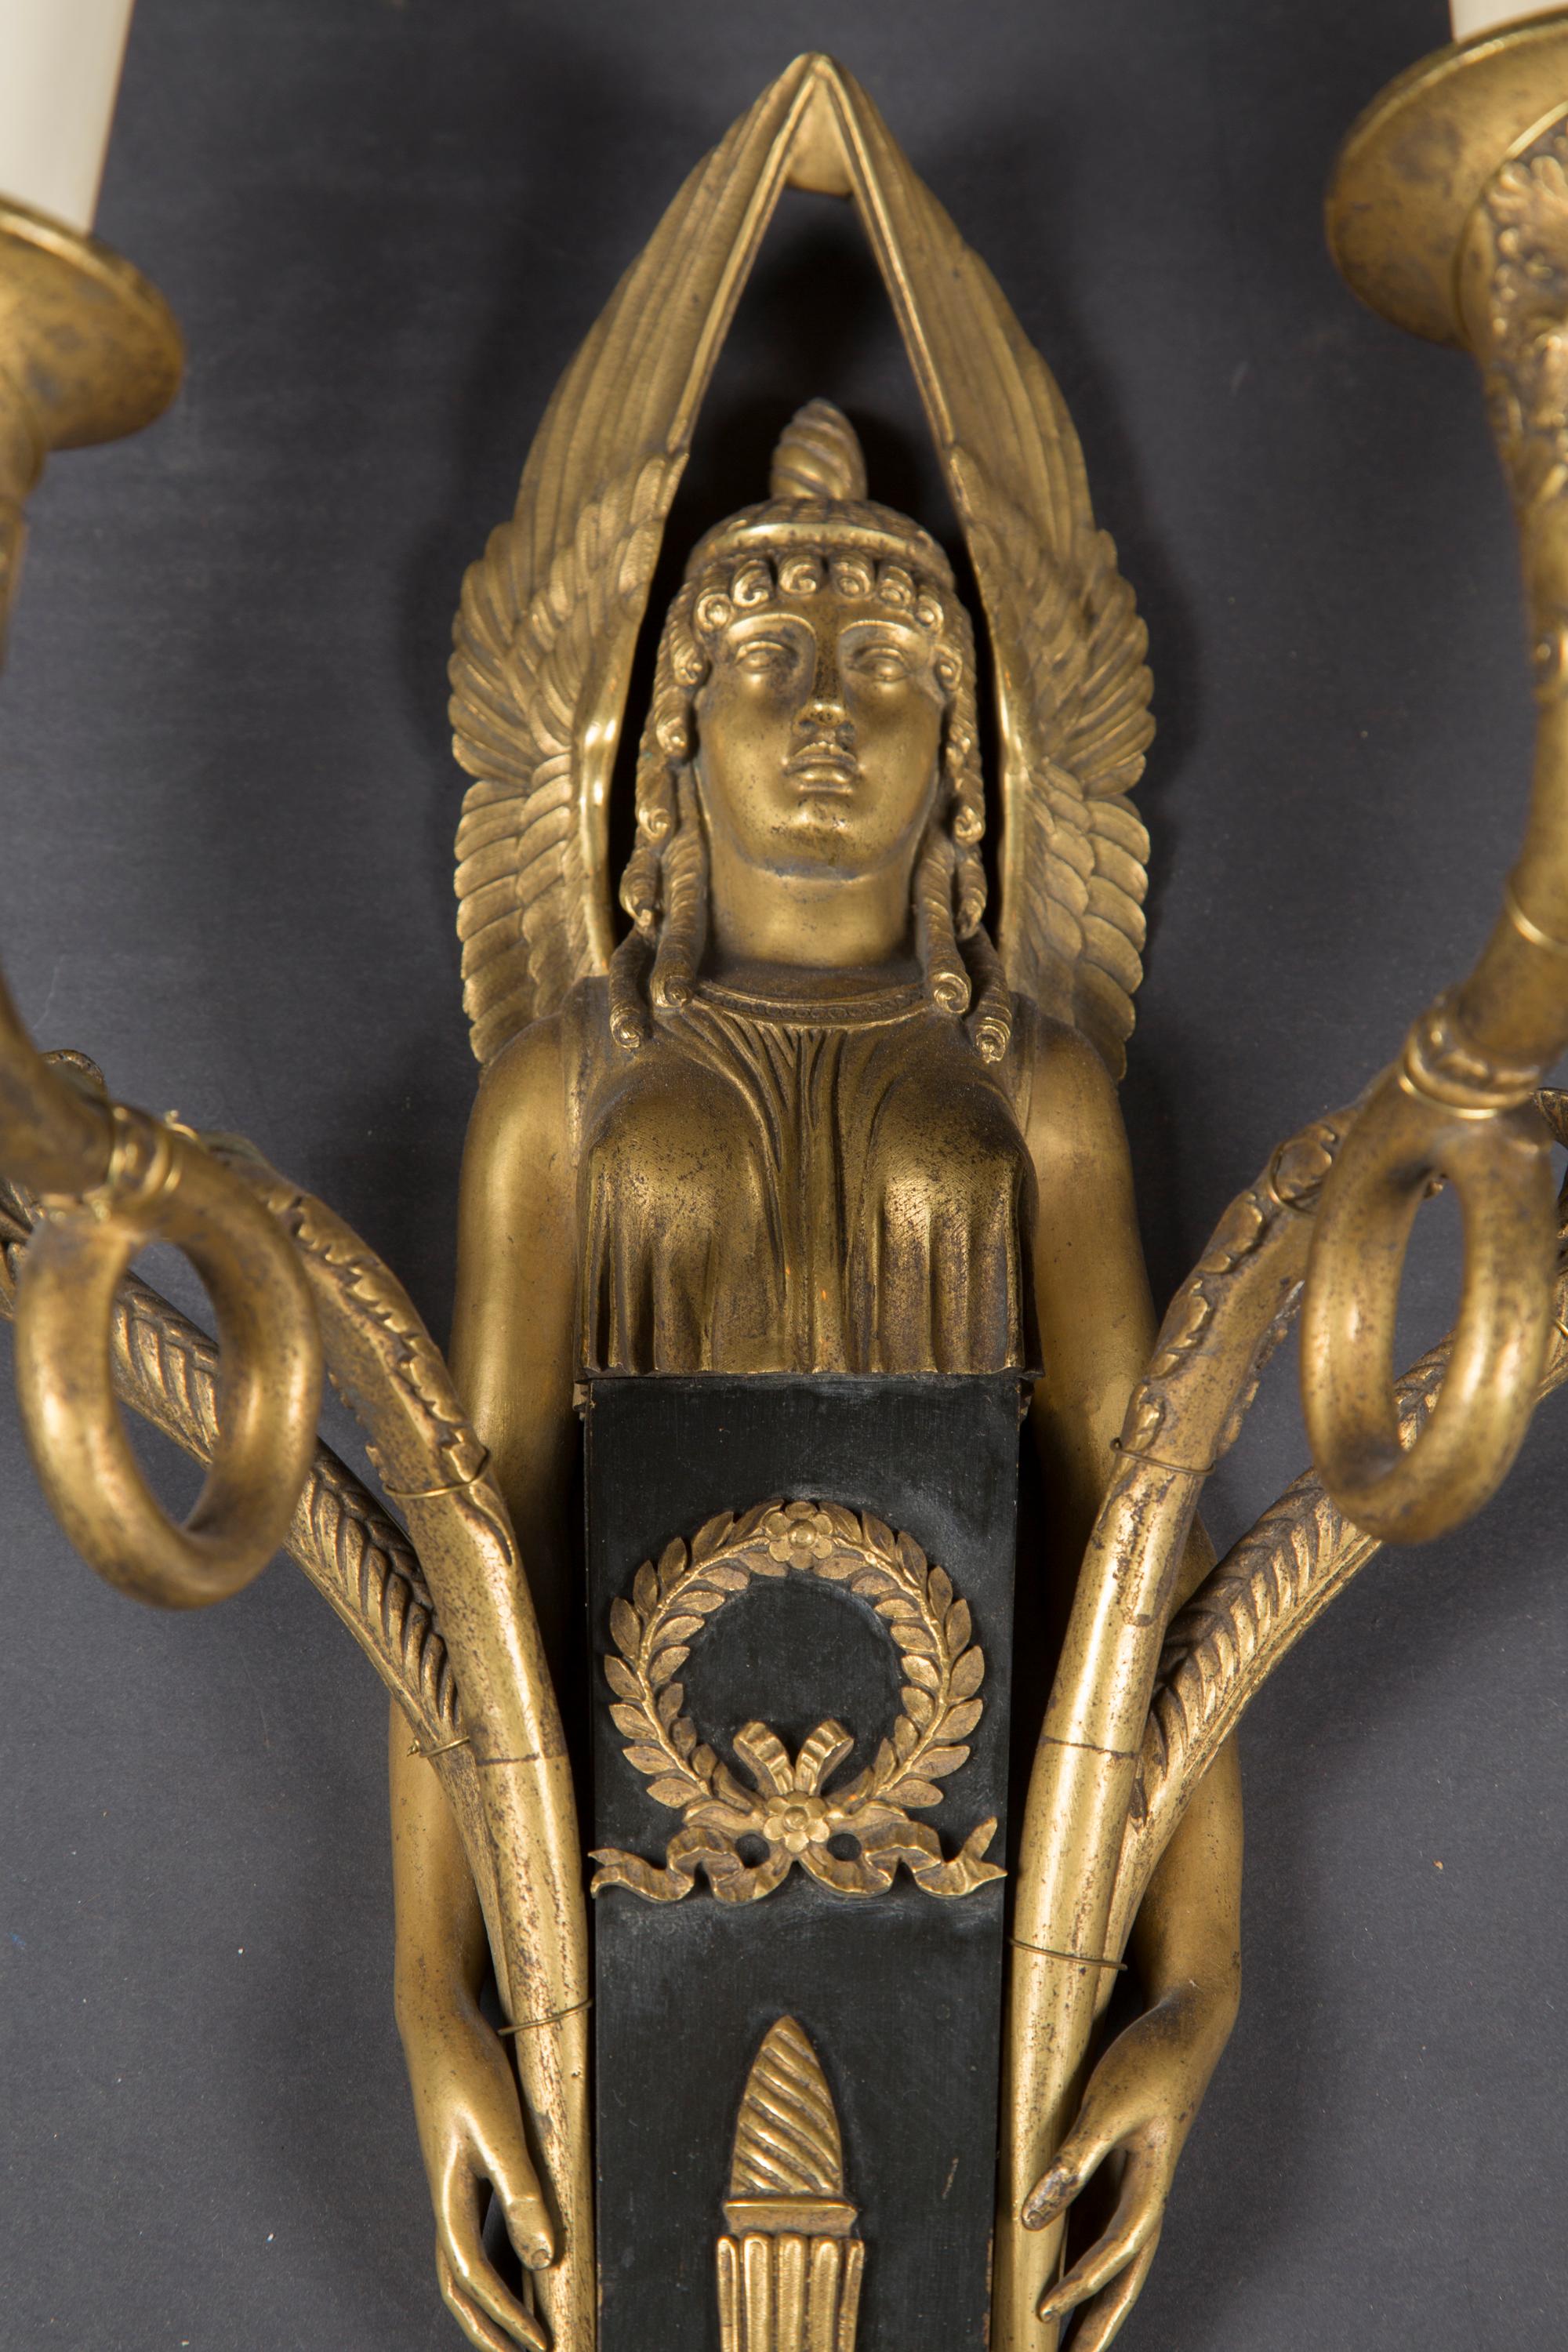 Cette magnifique paire d'appliques Empire du XIXe siècle est faite de bronze et de métal, et présente des figures égyptiennes fantastiquement stylisées sur chaque plaque arrière. Notez les détails des ailes, du tissu et des mains dont les doigts